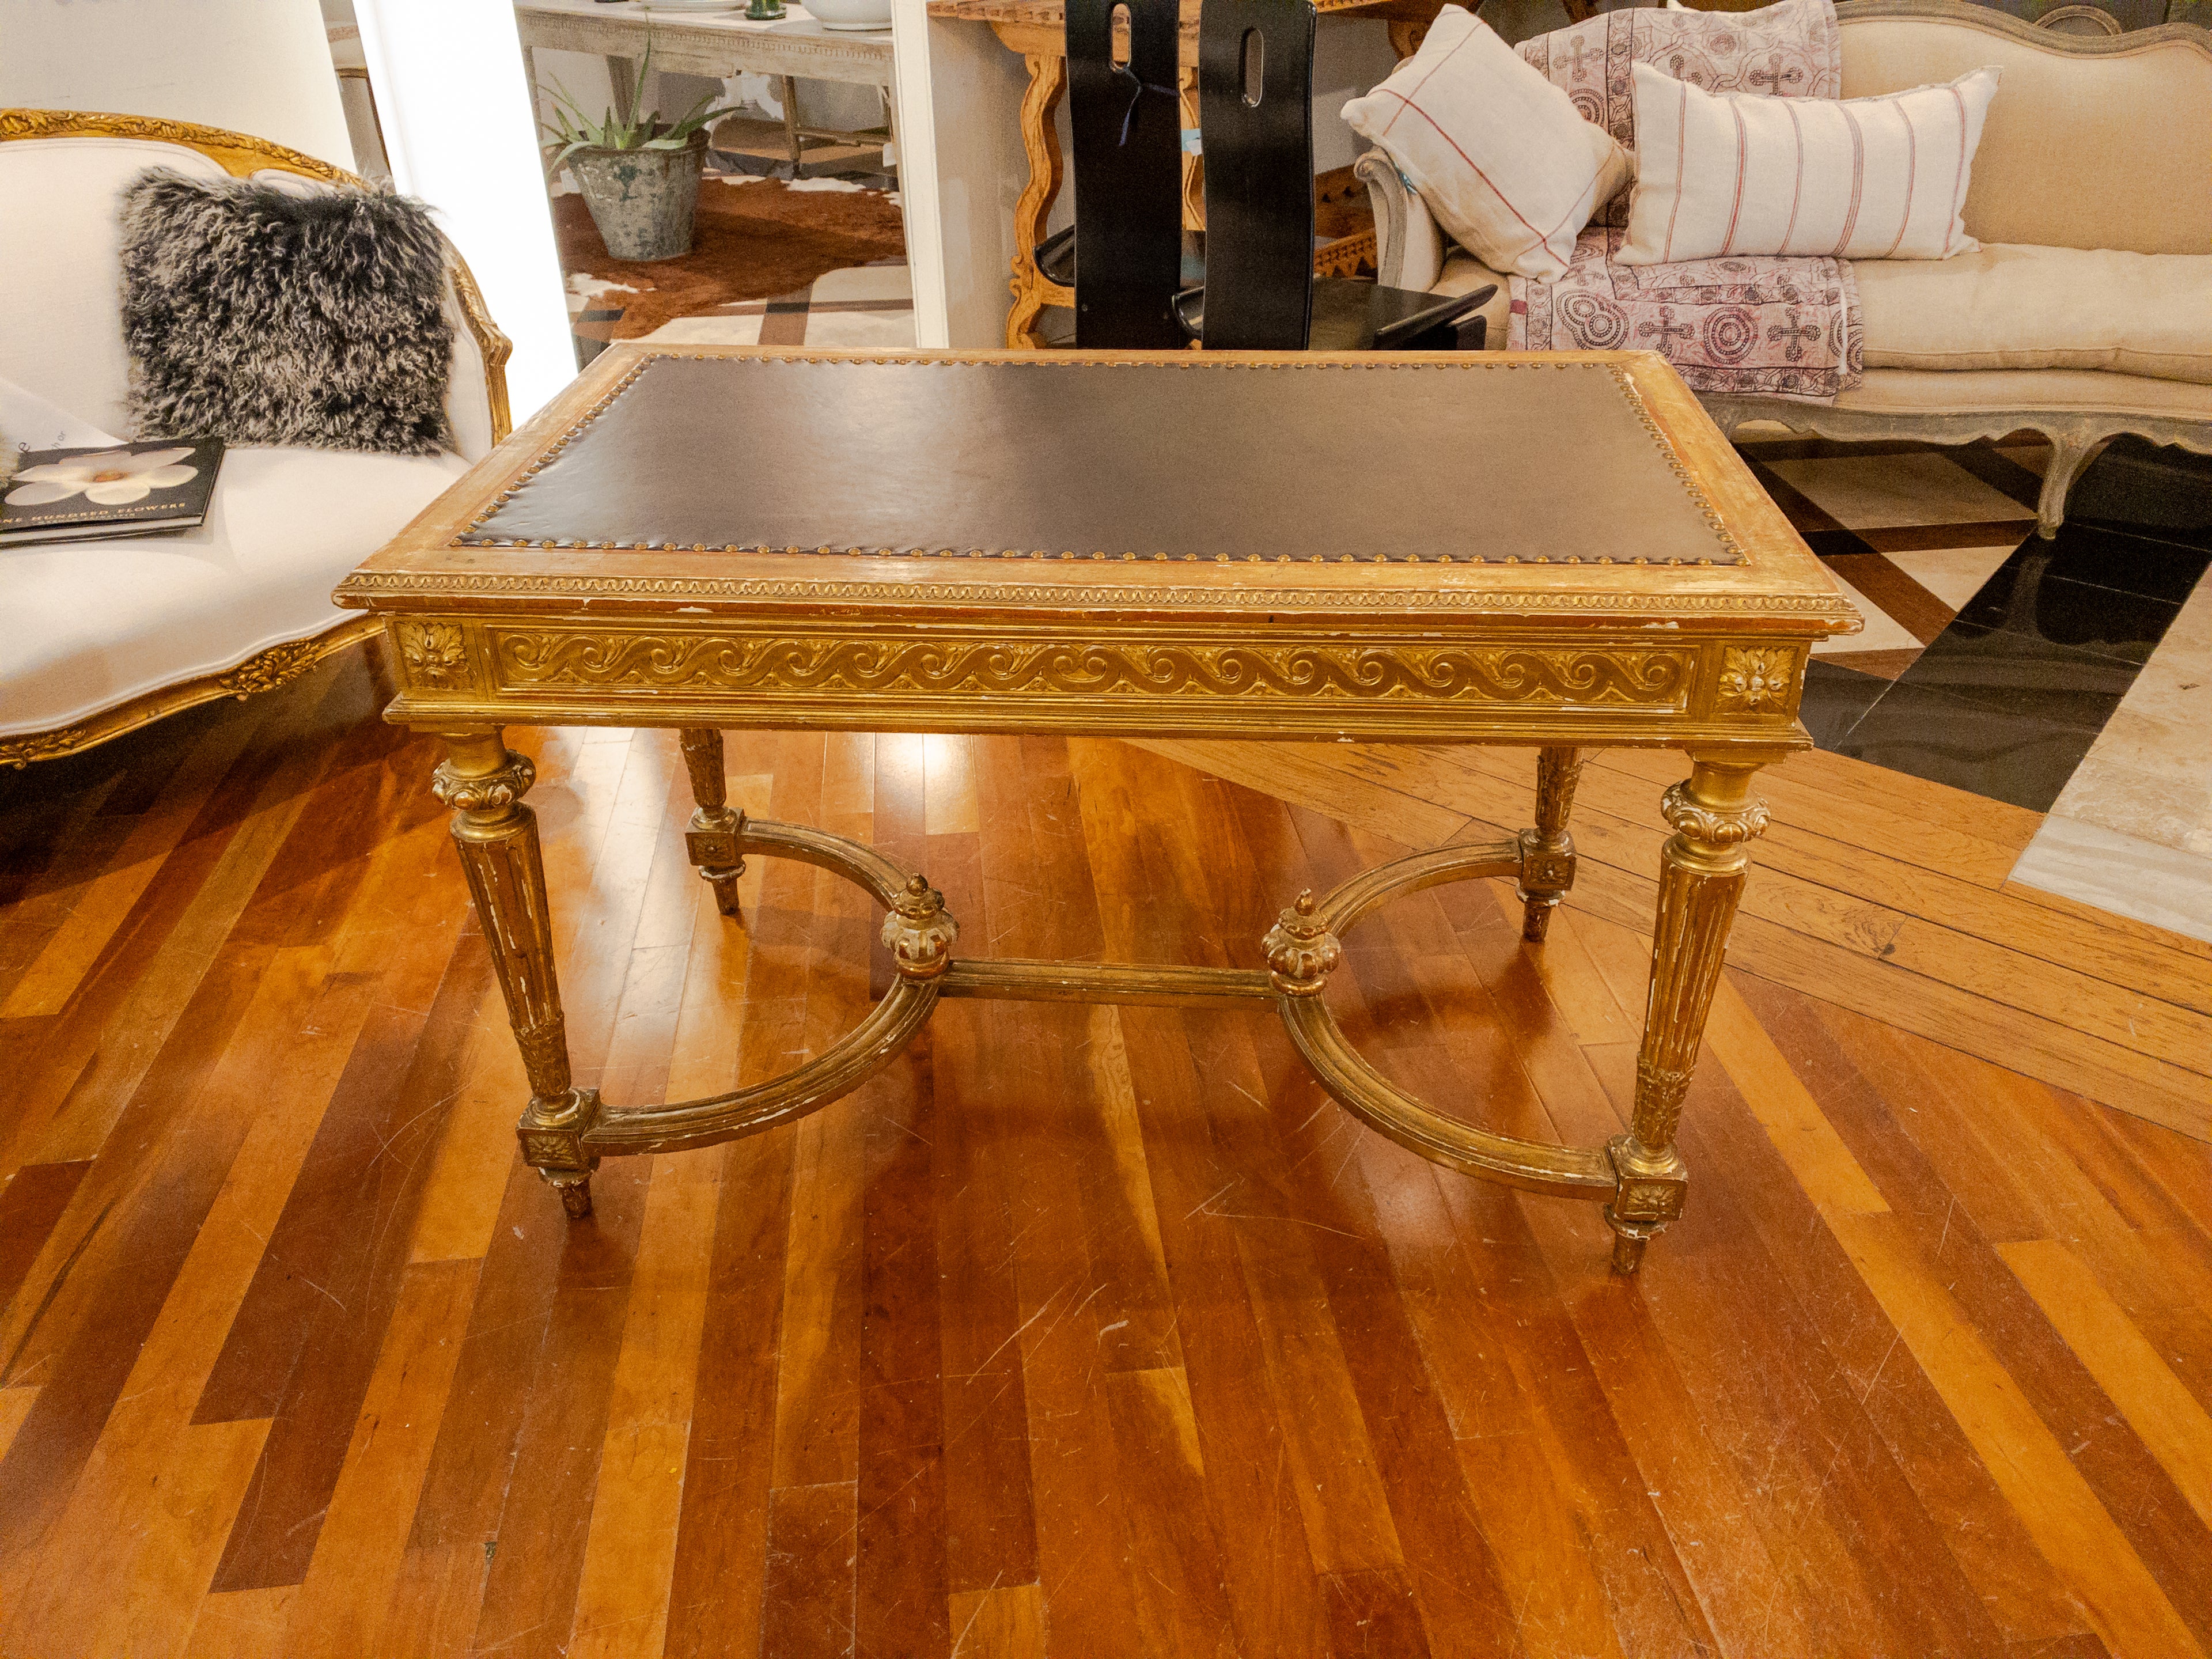 Cette table de bibliothèque à feuilles d'or de style Empire du XIXe siècle est un meuble vraiment exquis qui respire l'élégance et la sophistication intemporelles. Fabriqué dans l'opulent style Empire, il met en valeur la grandeur et le luxe